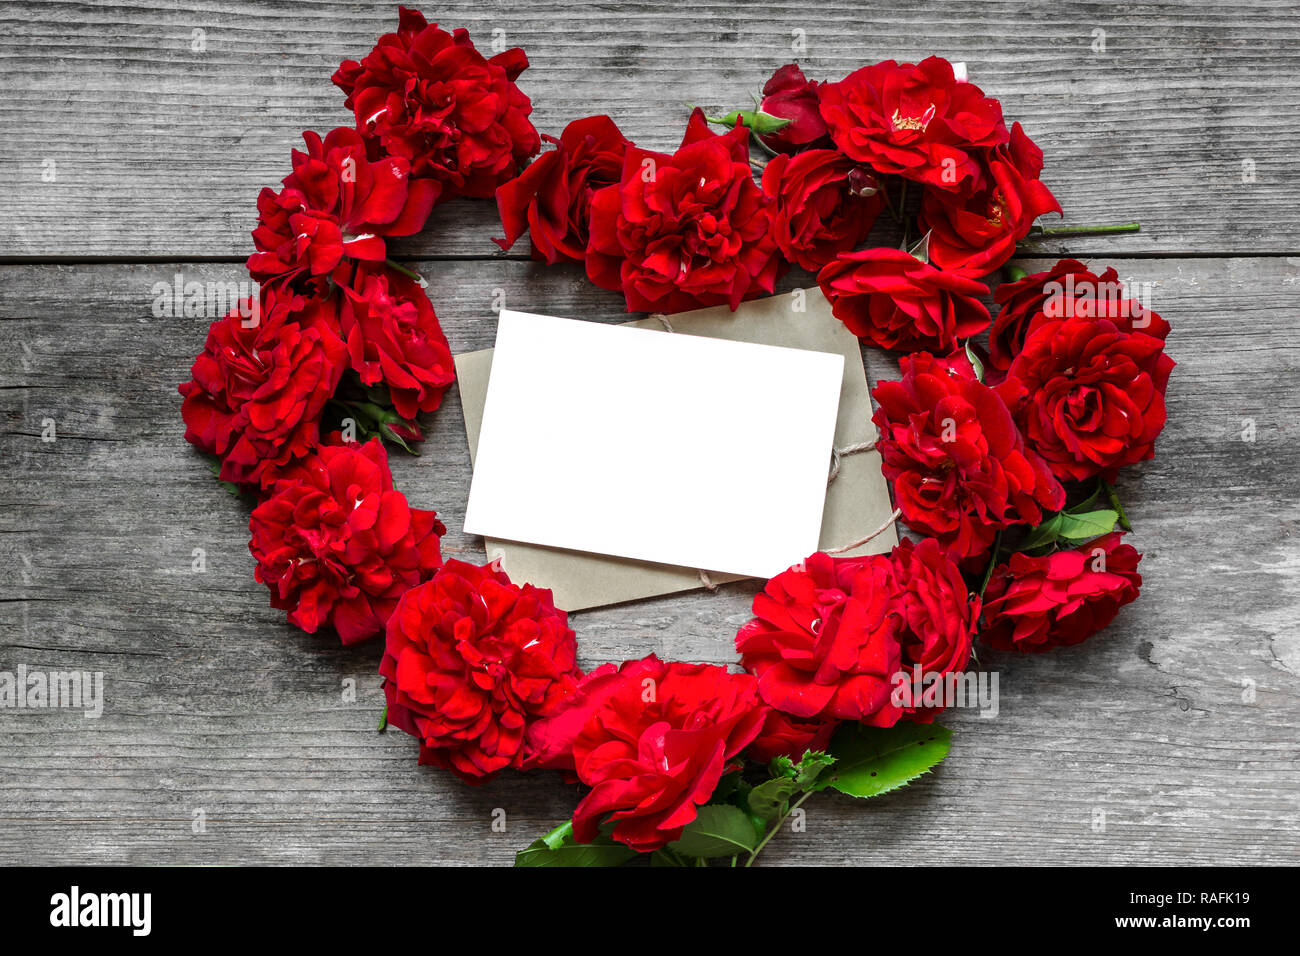 Rosas flores rojas en forma de corazón con tarjeta de felicitación en blanco sobre fondo de madera de estilo rústico. El día de San Valentín concepto. Vista superior de la maqueta. Foto de stock